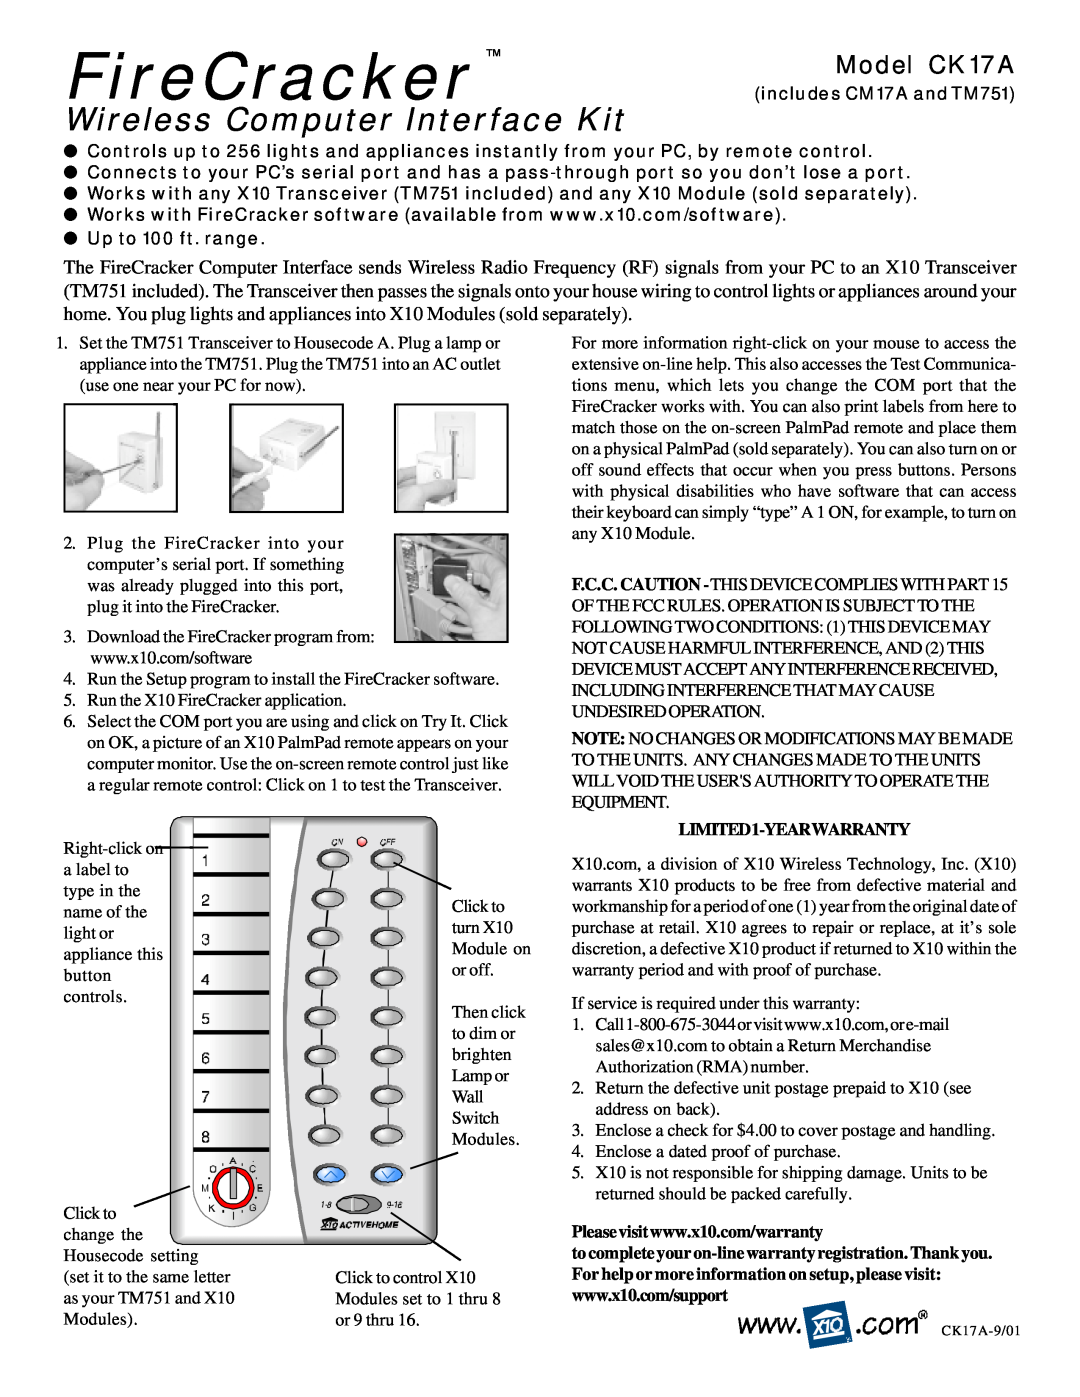 X10 Wireless Technology warranty FireCracker, Wireless Computer Interface Kit, Model CK17A, LIMITED1-YEARWARRANTY 